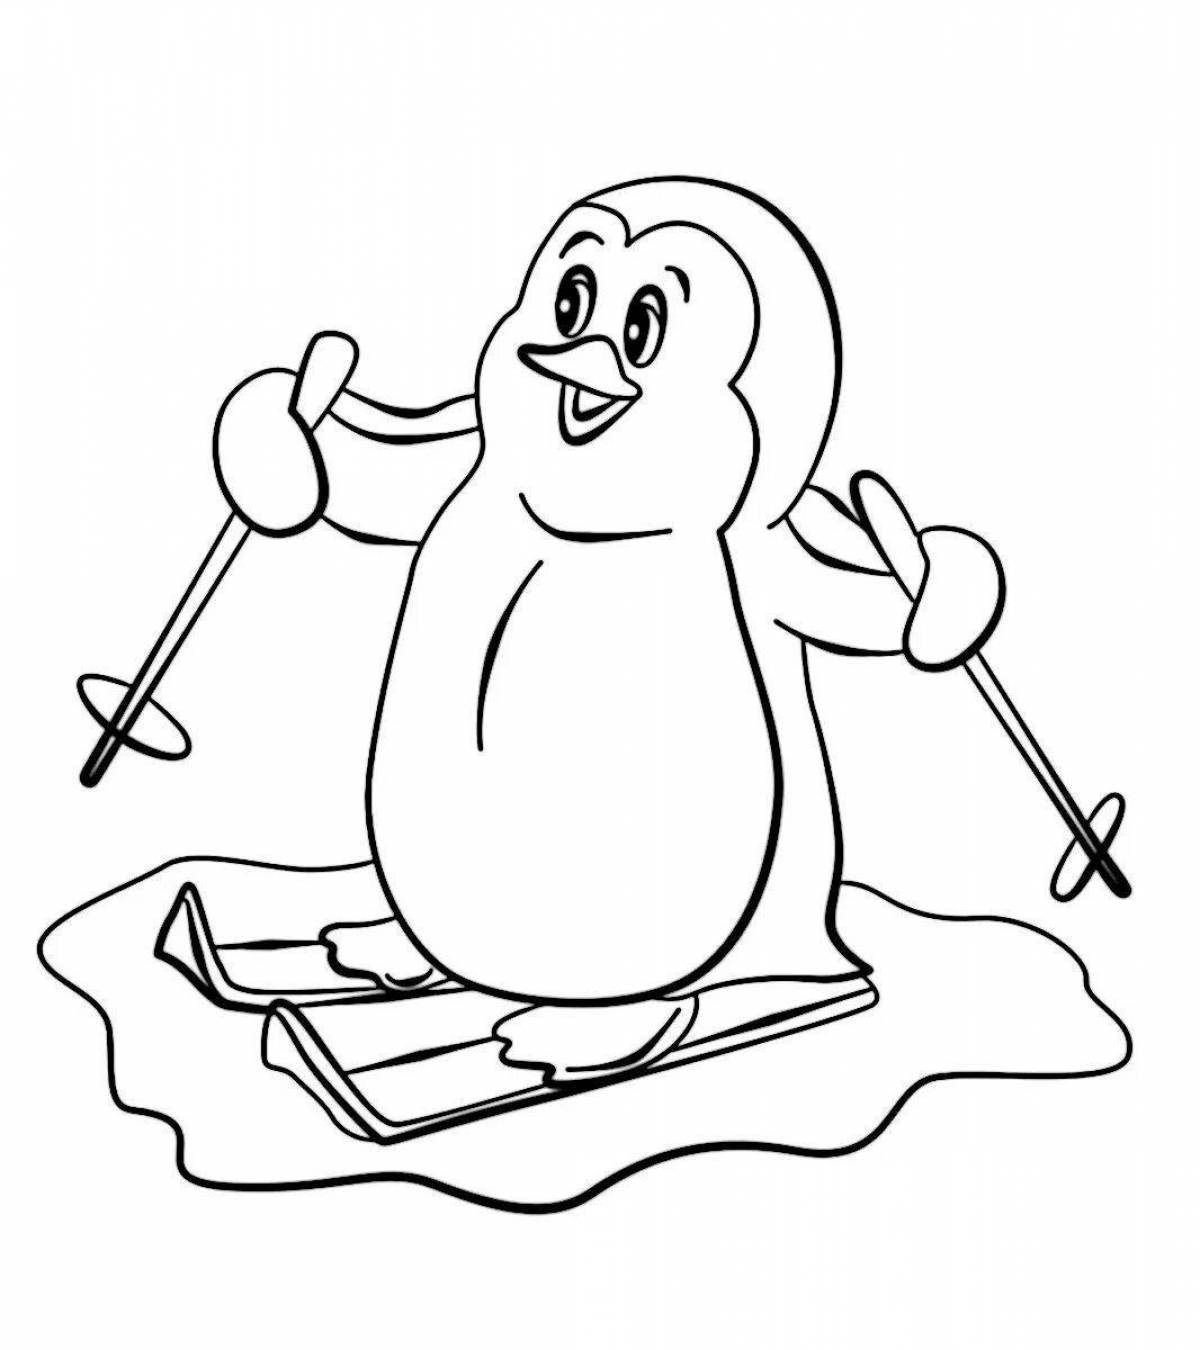 Раскраска радостный пингвин на льдине для детей